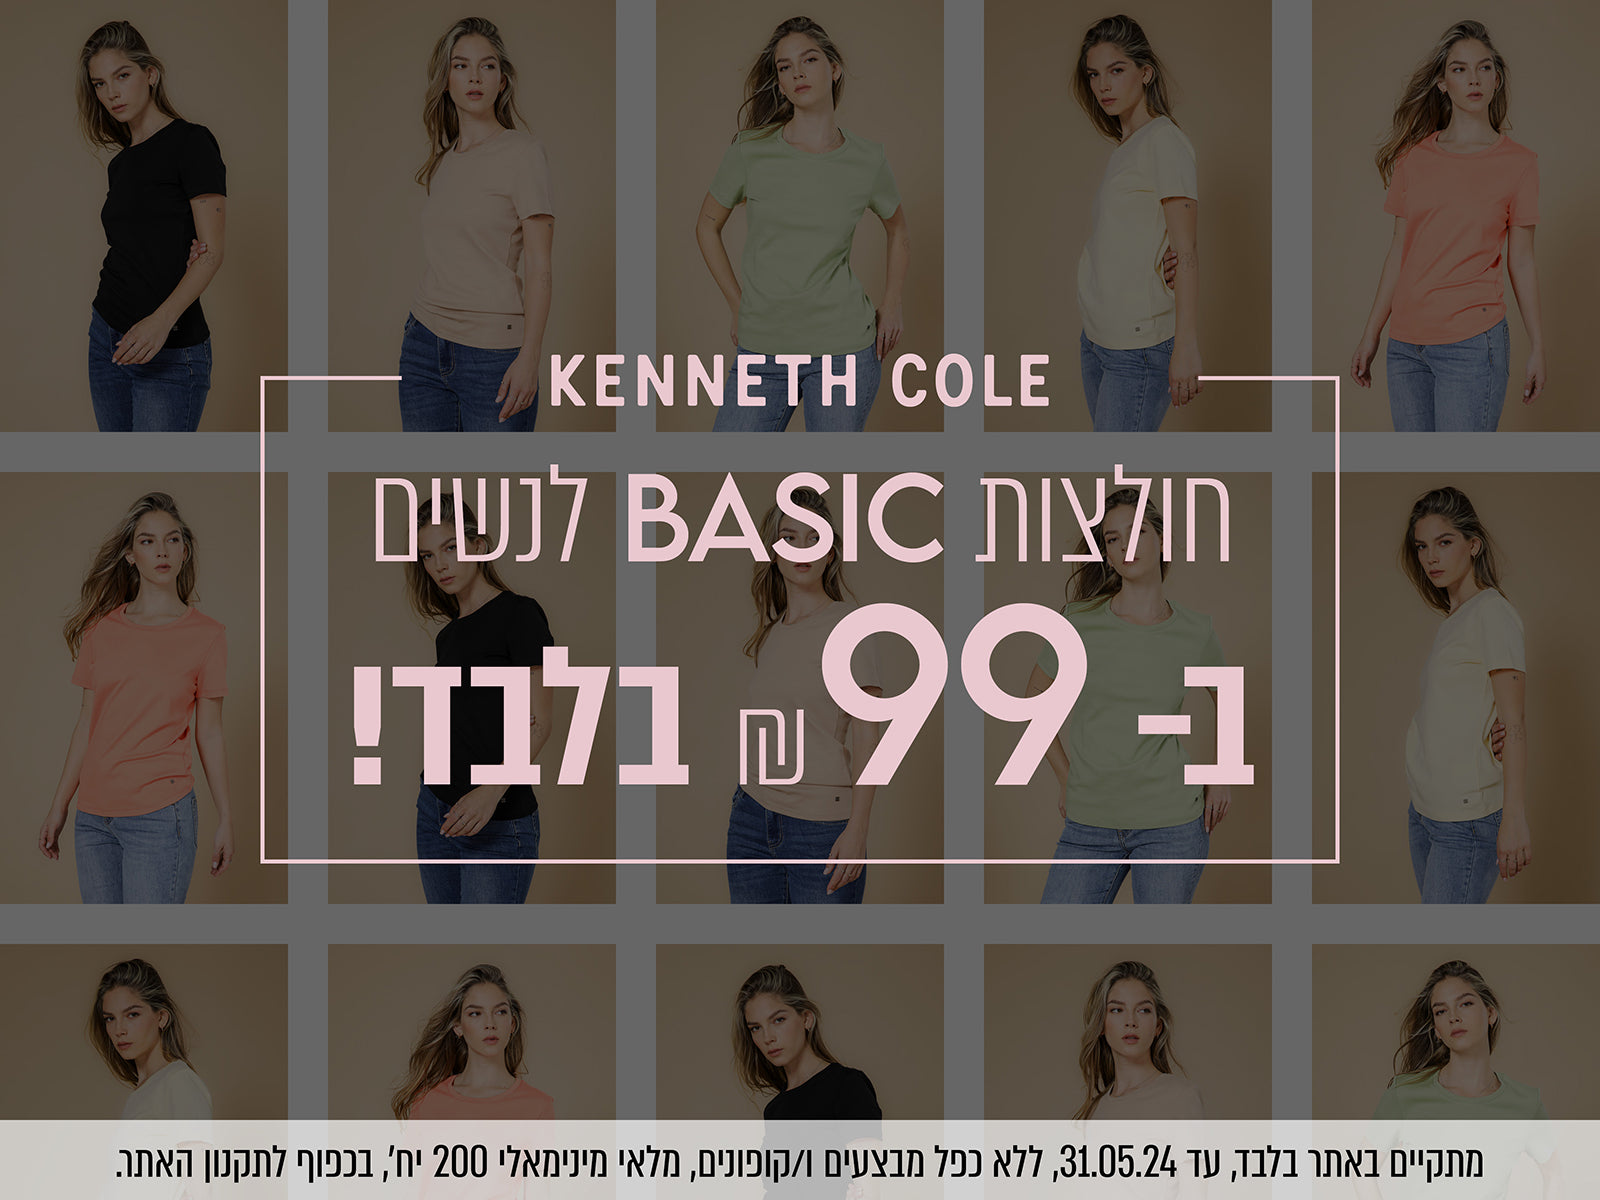 Kenneth cole - חולצות בייסיק לנשים ב-99 ש"ח בלבד - מתקייים באתר בלבד עד 31.5.24, ללא כפל מבצעים ו/או קופונים, מלאי מינימום מינימאלי 200 יח', בכפוף לתקנון האתר.